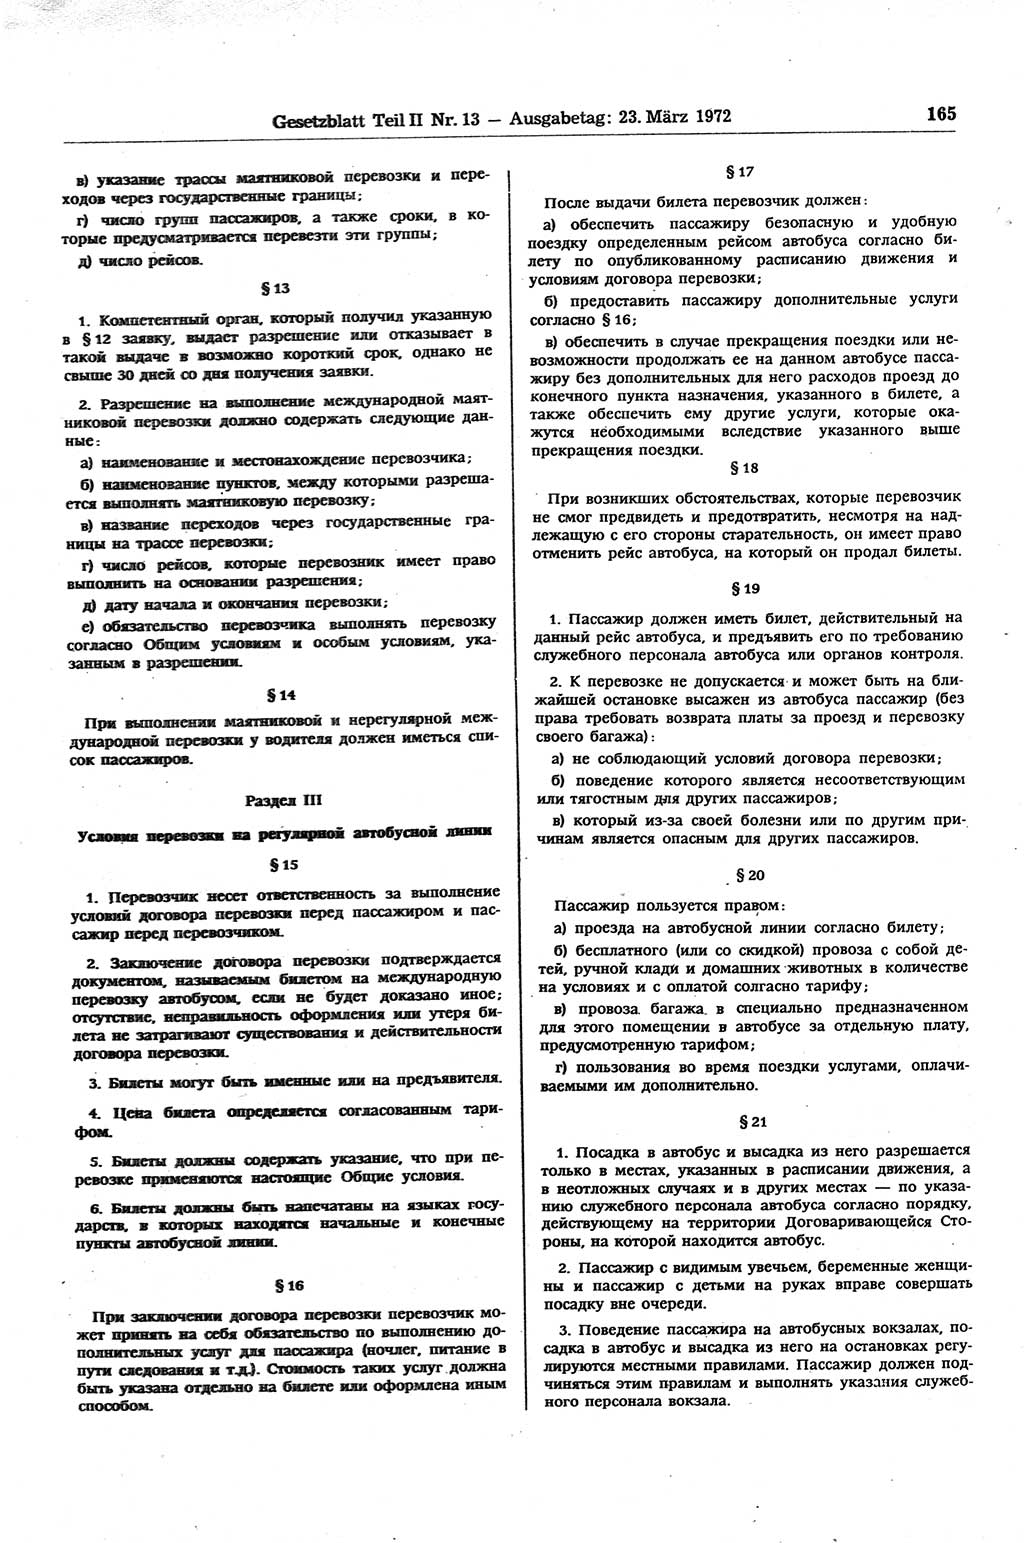 Gesetzblatt (GBl.) der Deutschen Demokratischen Republik (DDR) Teil ⅠⅠ 1972, Seite 165 (GBl. DDR ⅠⅠ 1972, S. 165)